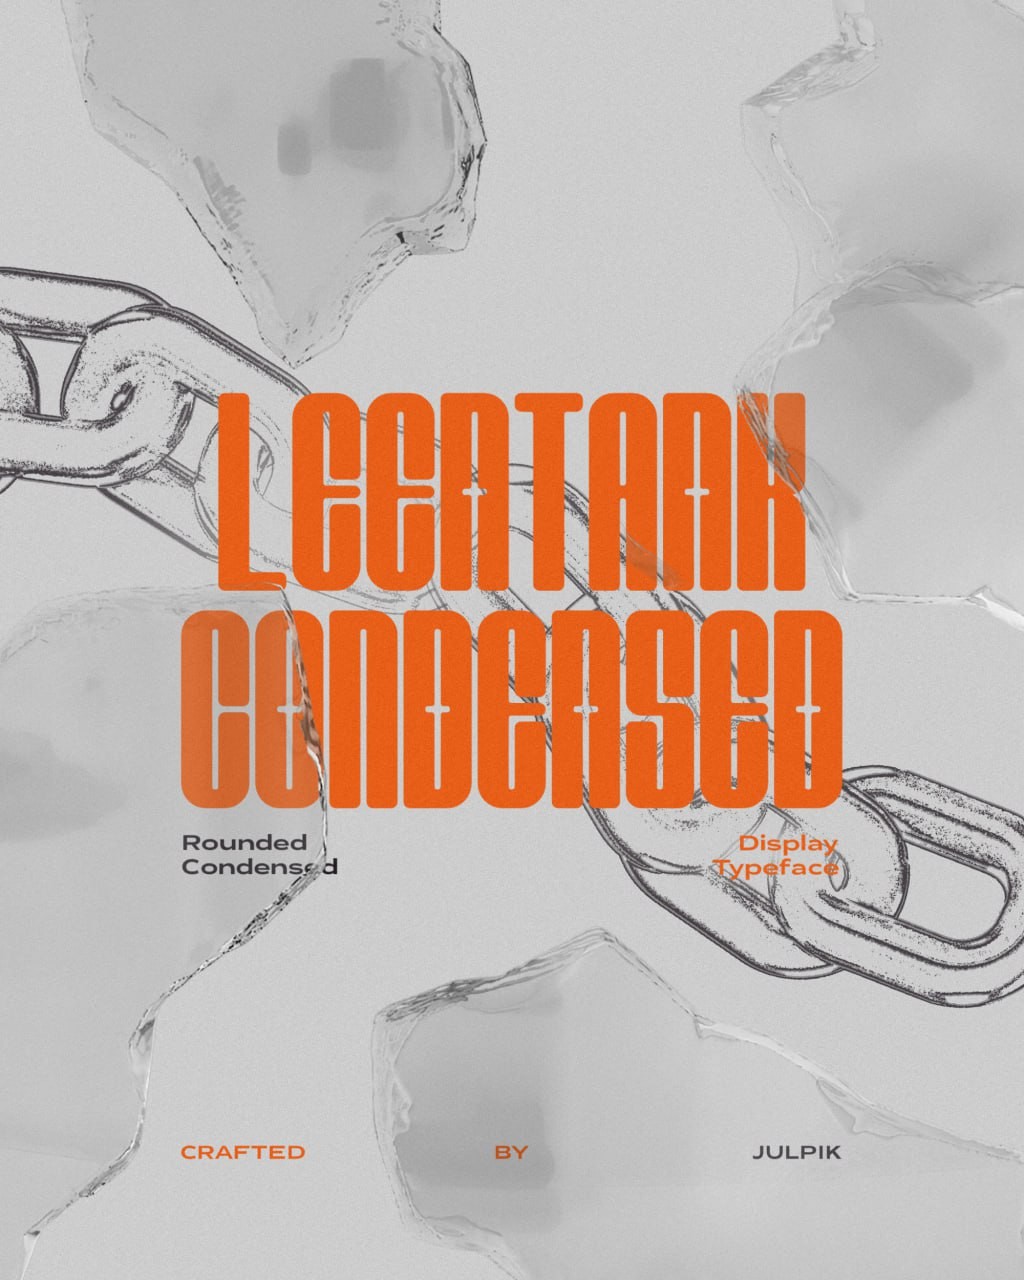 Leentank Condensed 现代时尚英文字体 设计素材 第1张